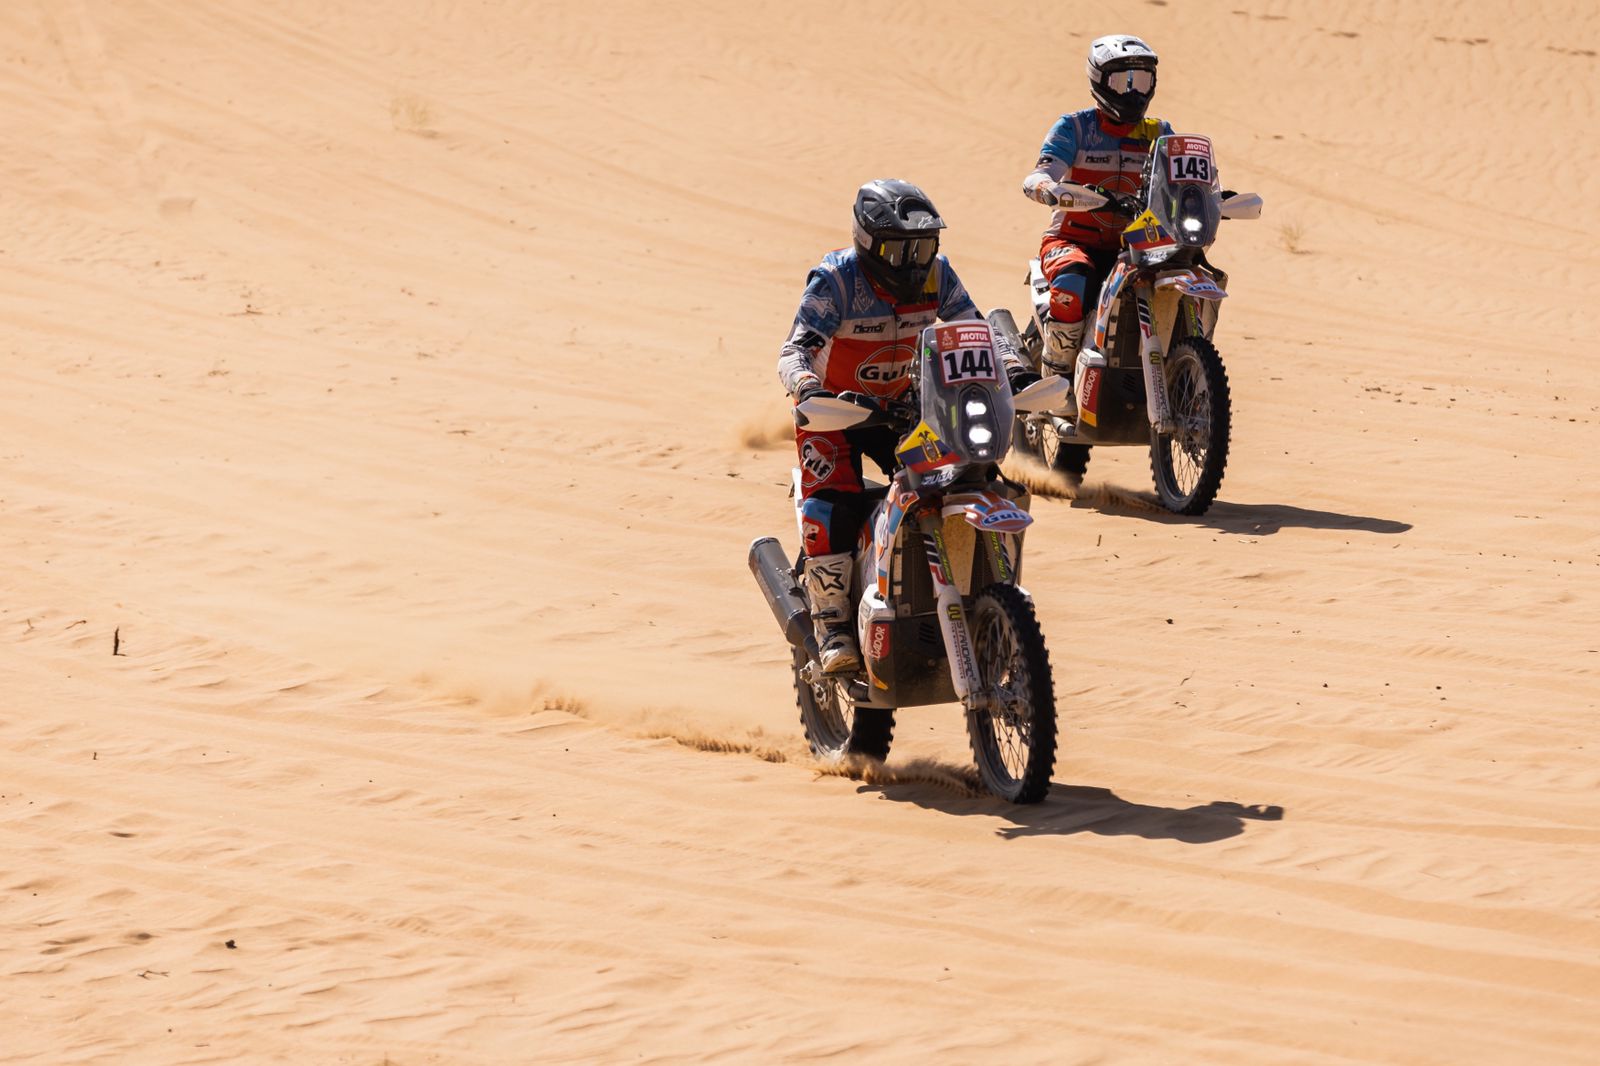 El equipo Puga tuvo algunos problemas, pero ya está enfocando a Jeddah - Dakar 2022